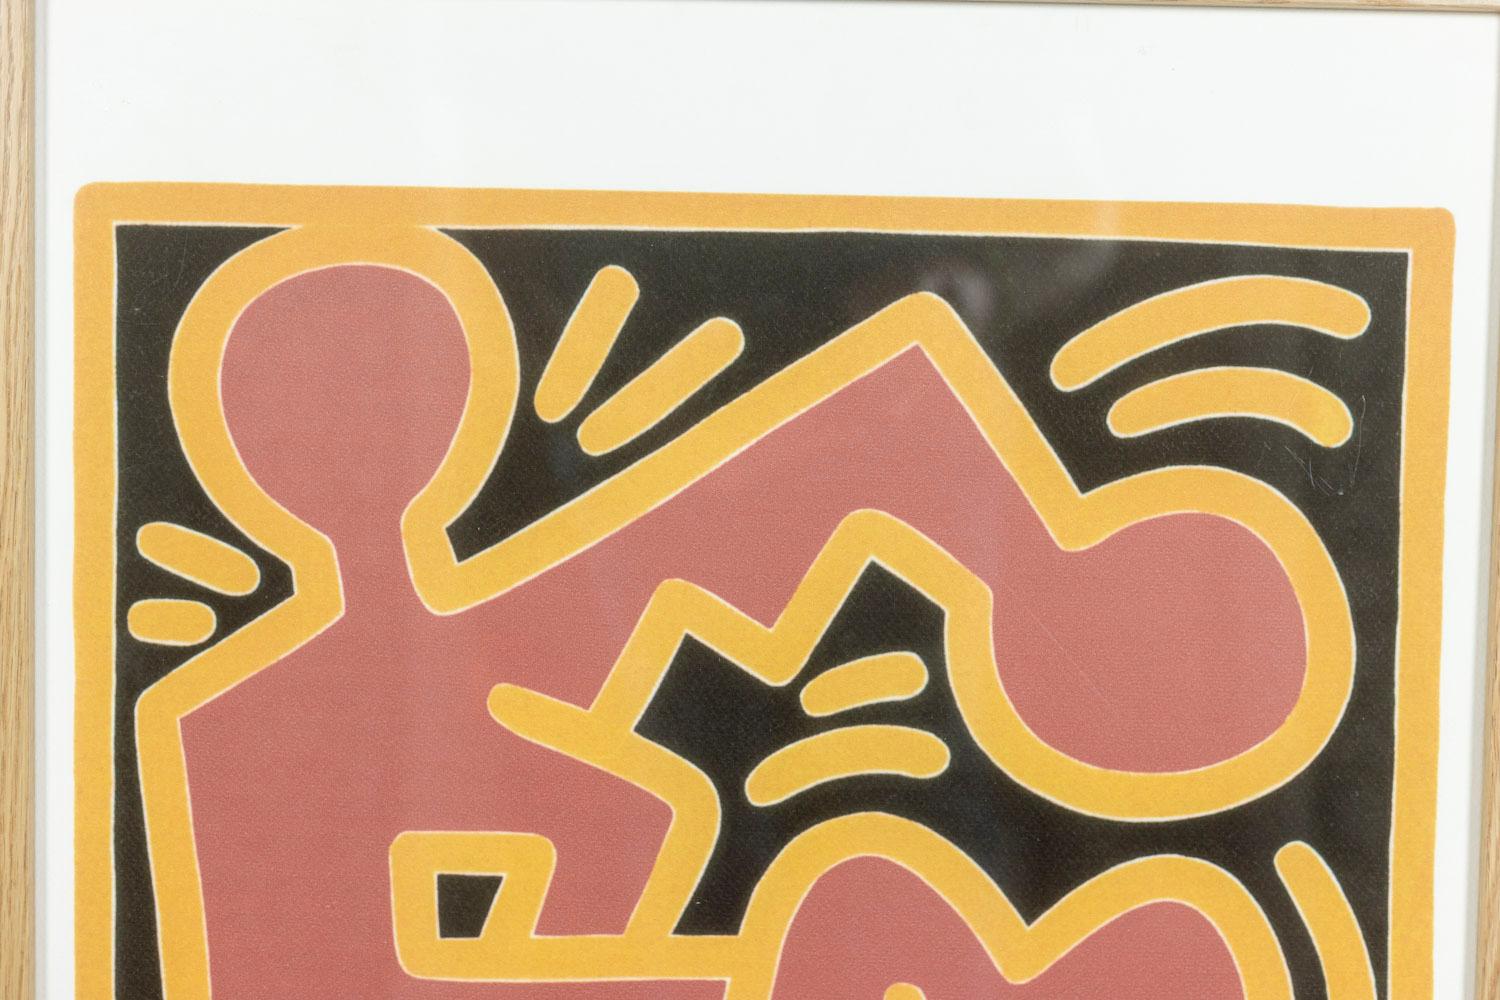 Keith Haring, signiert und nummeriert.

Lithographie mit schematischen Zeichen in roten und schwarzen Tönen in einem Rahmen aus blonder Eiche.

Nummeriert 31/150.

Amerikanische Arbeiten aus den 1990er Jahren.